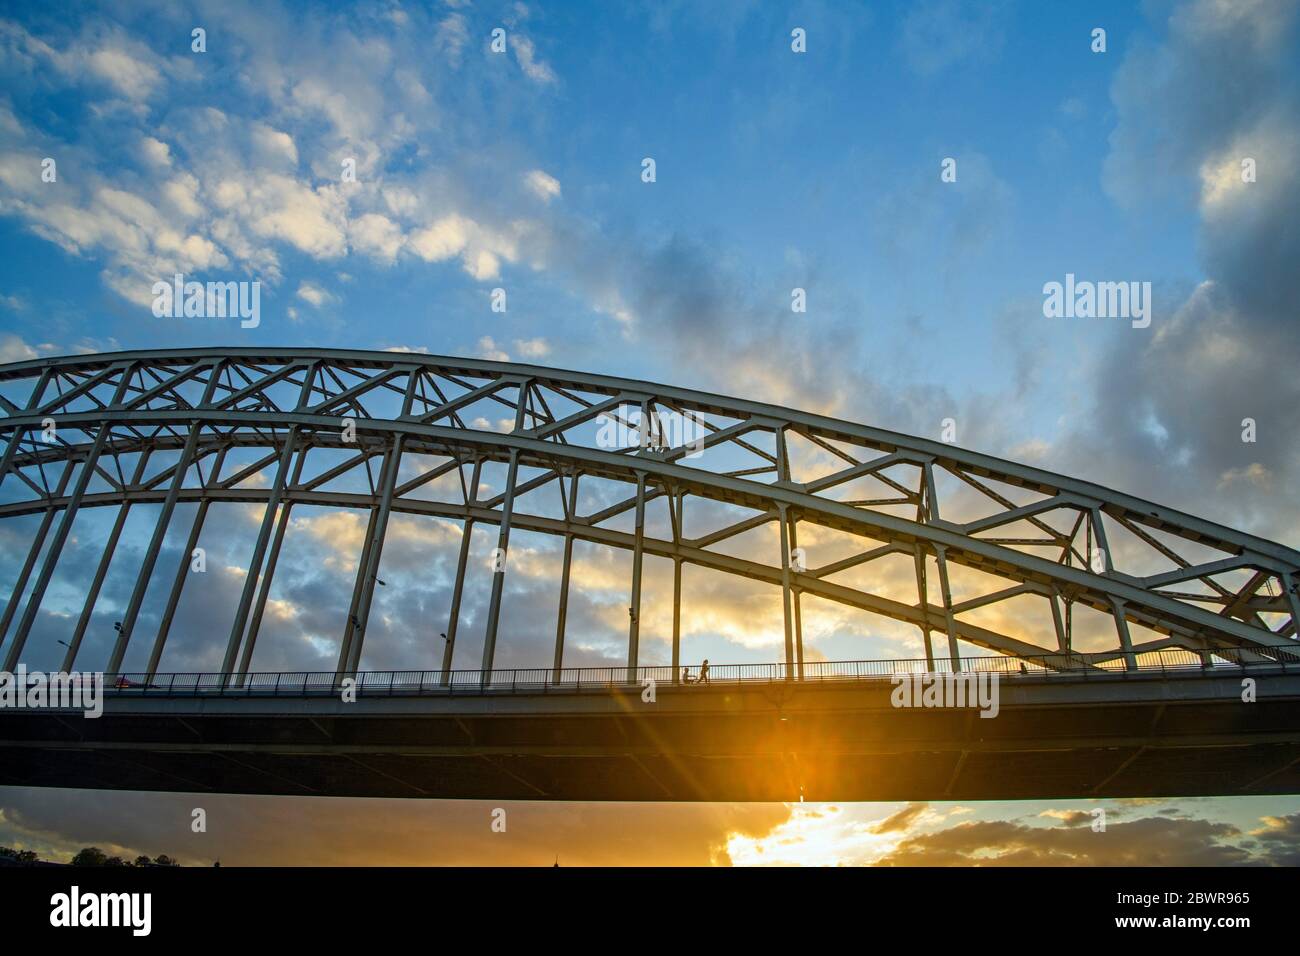 Waalbrug Bridge over the Waal River at sunset, Nijmegen, Gelderland, Netherlands. Stock Photo